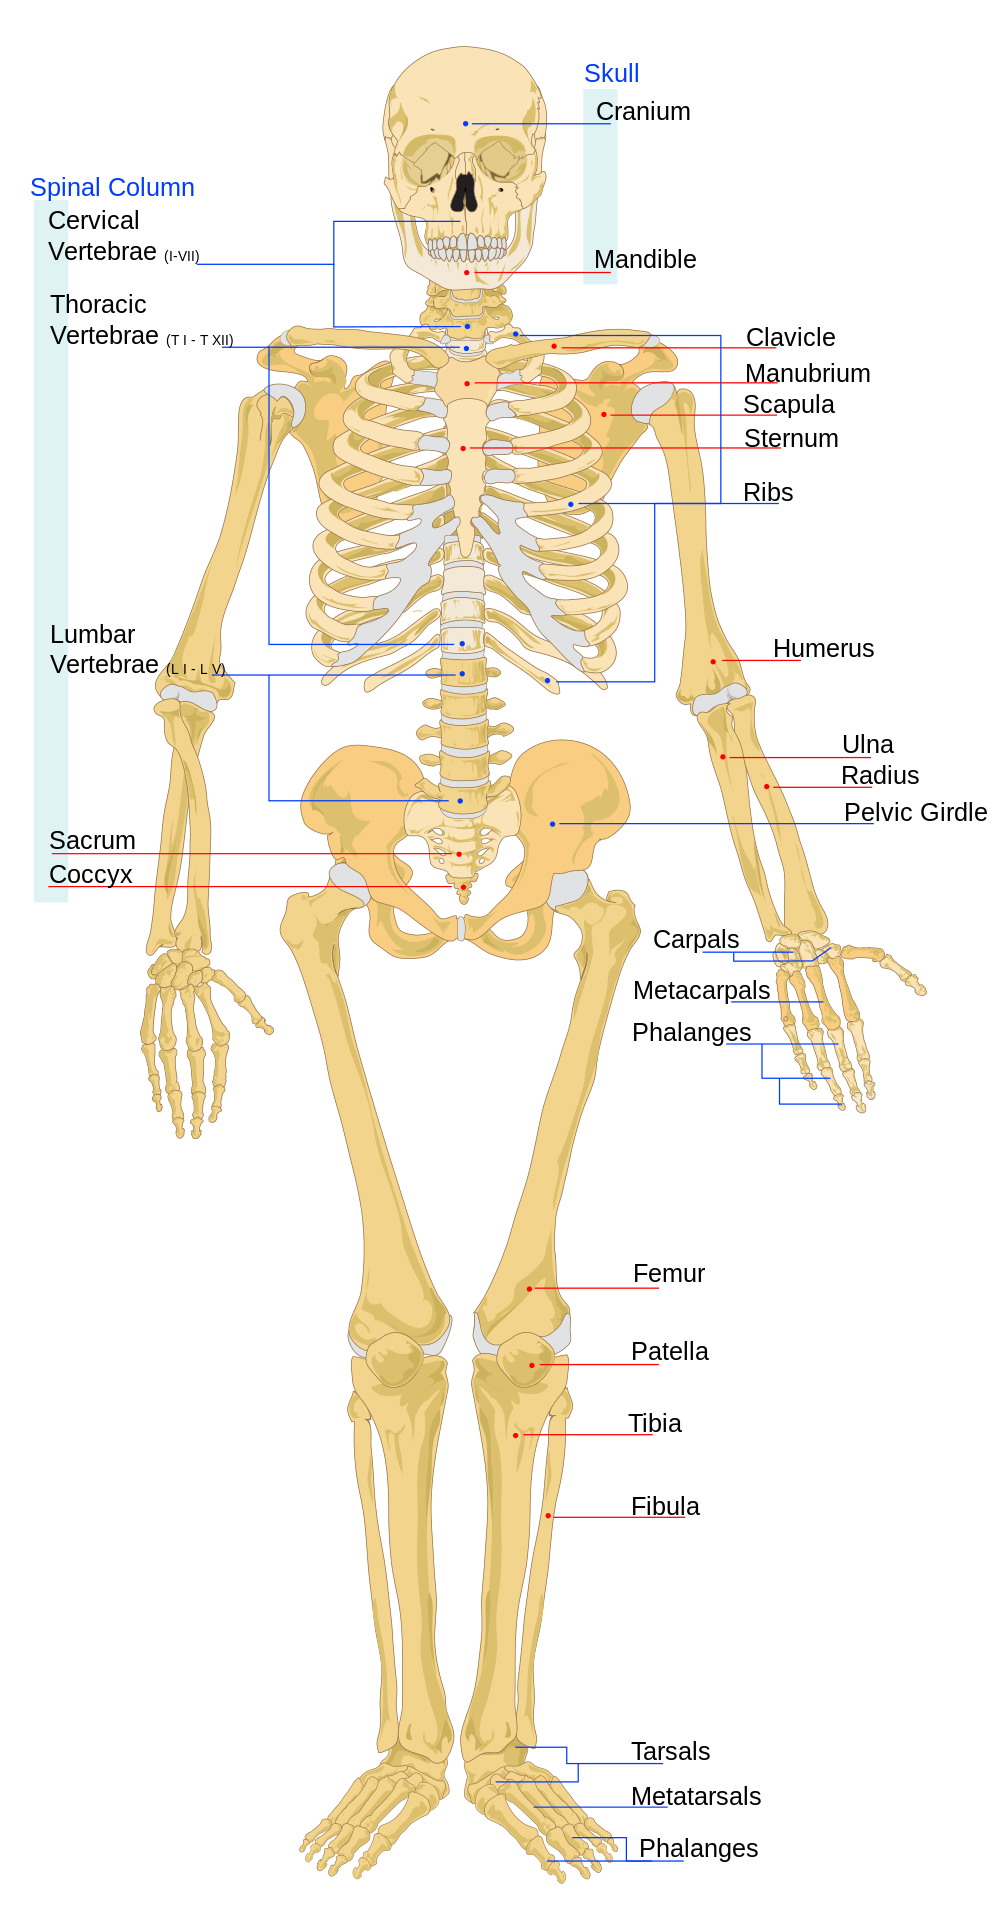 Diagram of the Human Skeleton